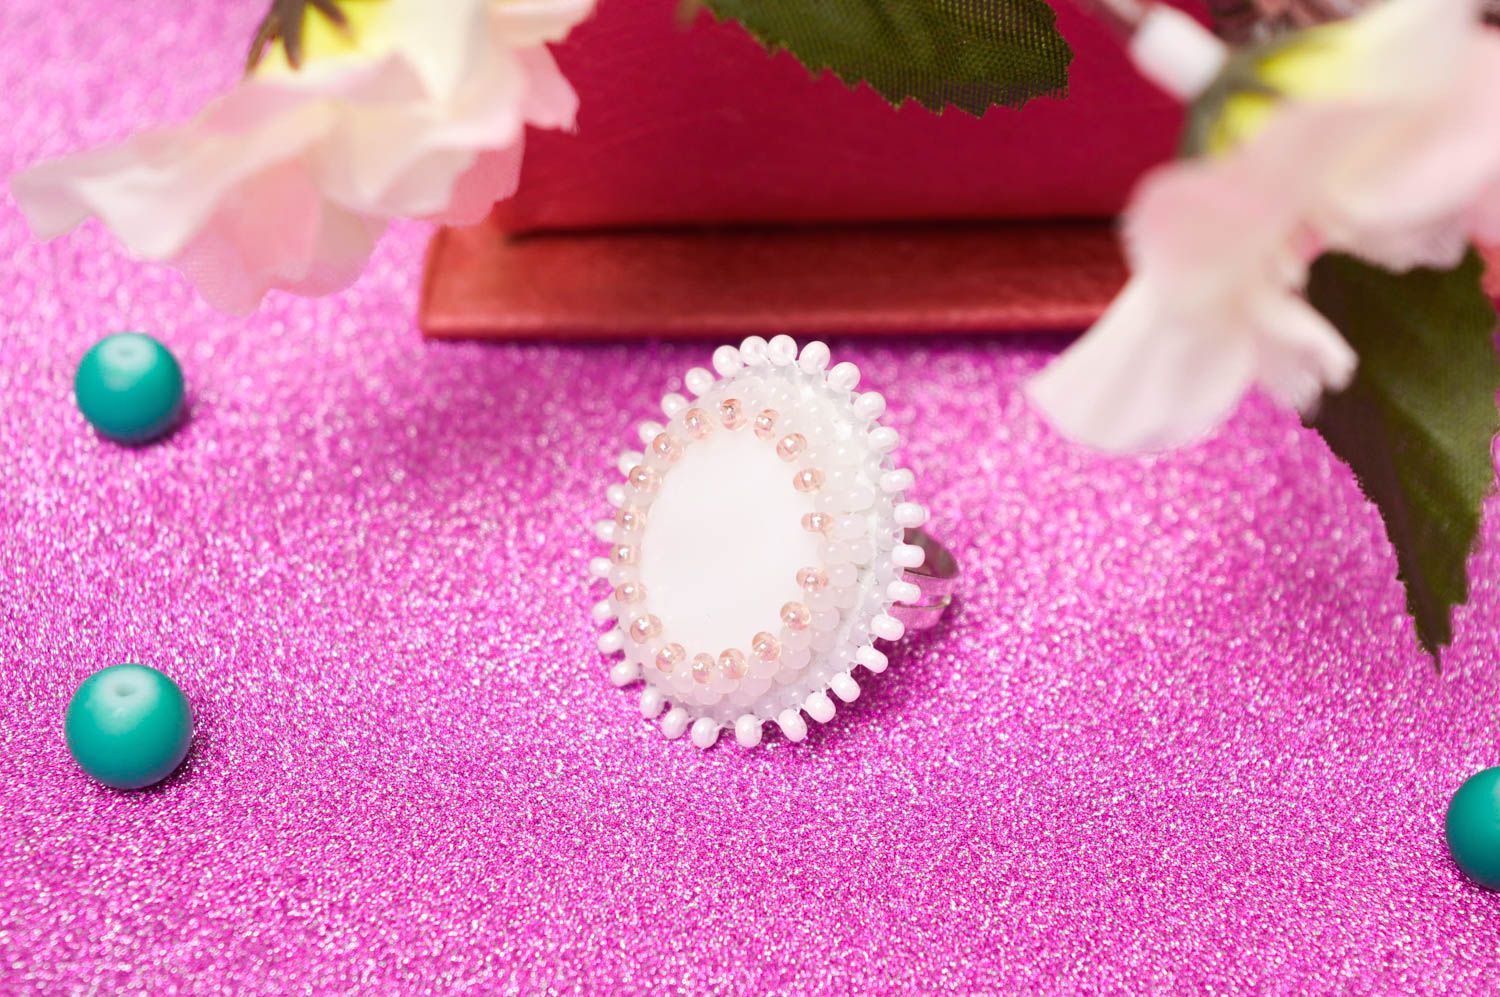 Красивое кольцо ручной работы необычное кольцо с бисером белое кольцо из кожи фото 1